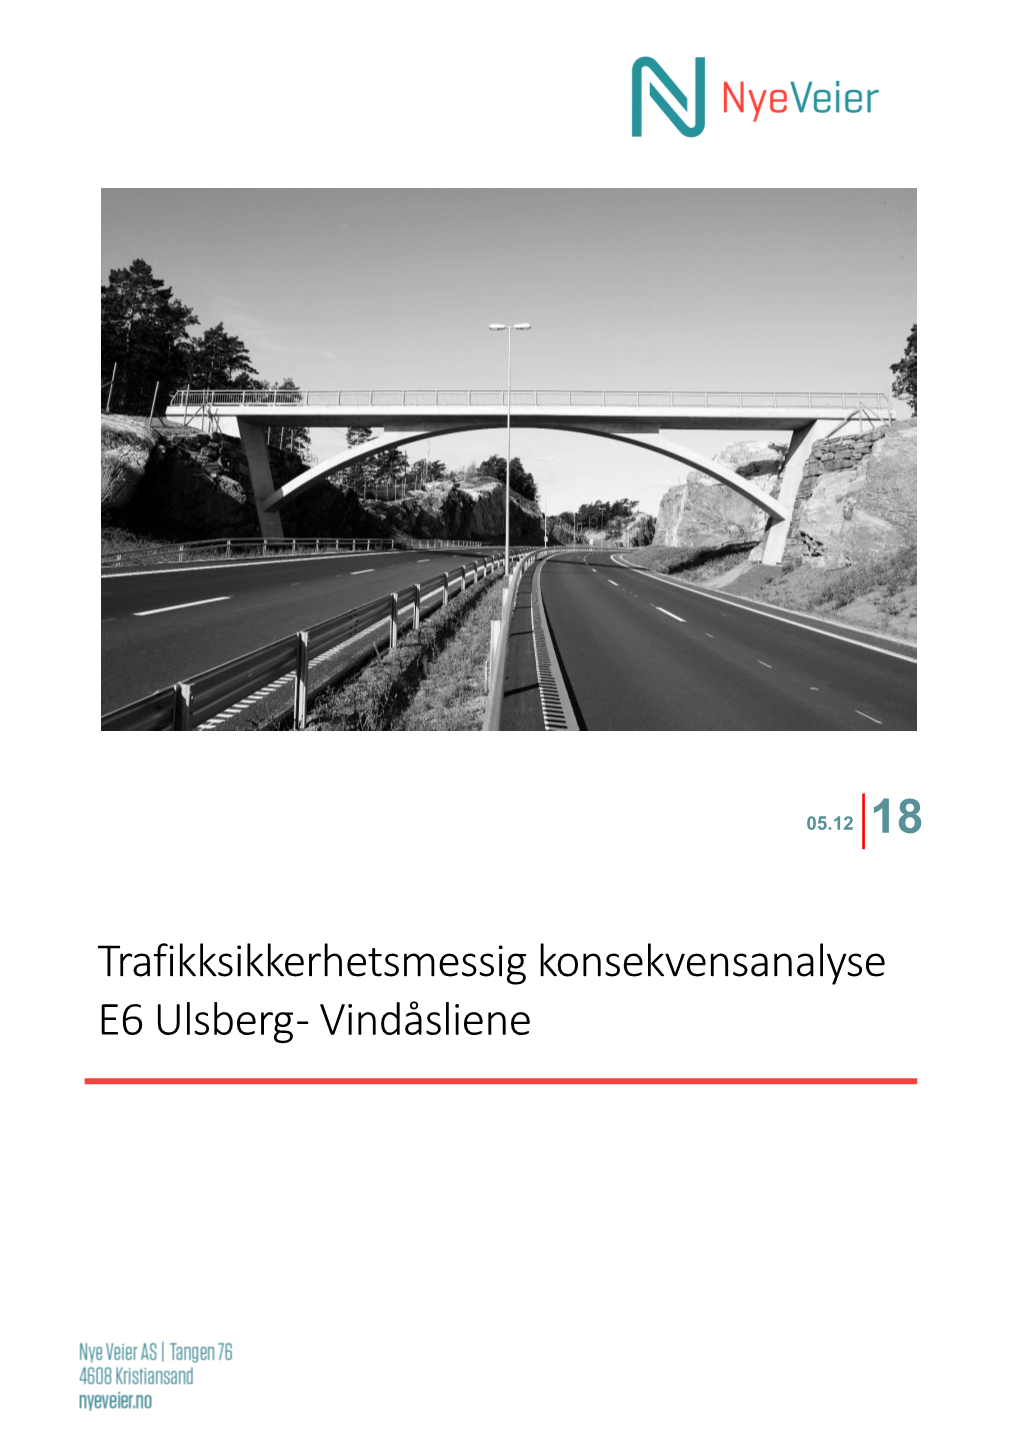 Trafikksikkerhetsmessig Konsekvensanalyse E6 Ulsberg - Vindåsliene